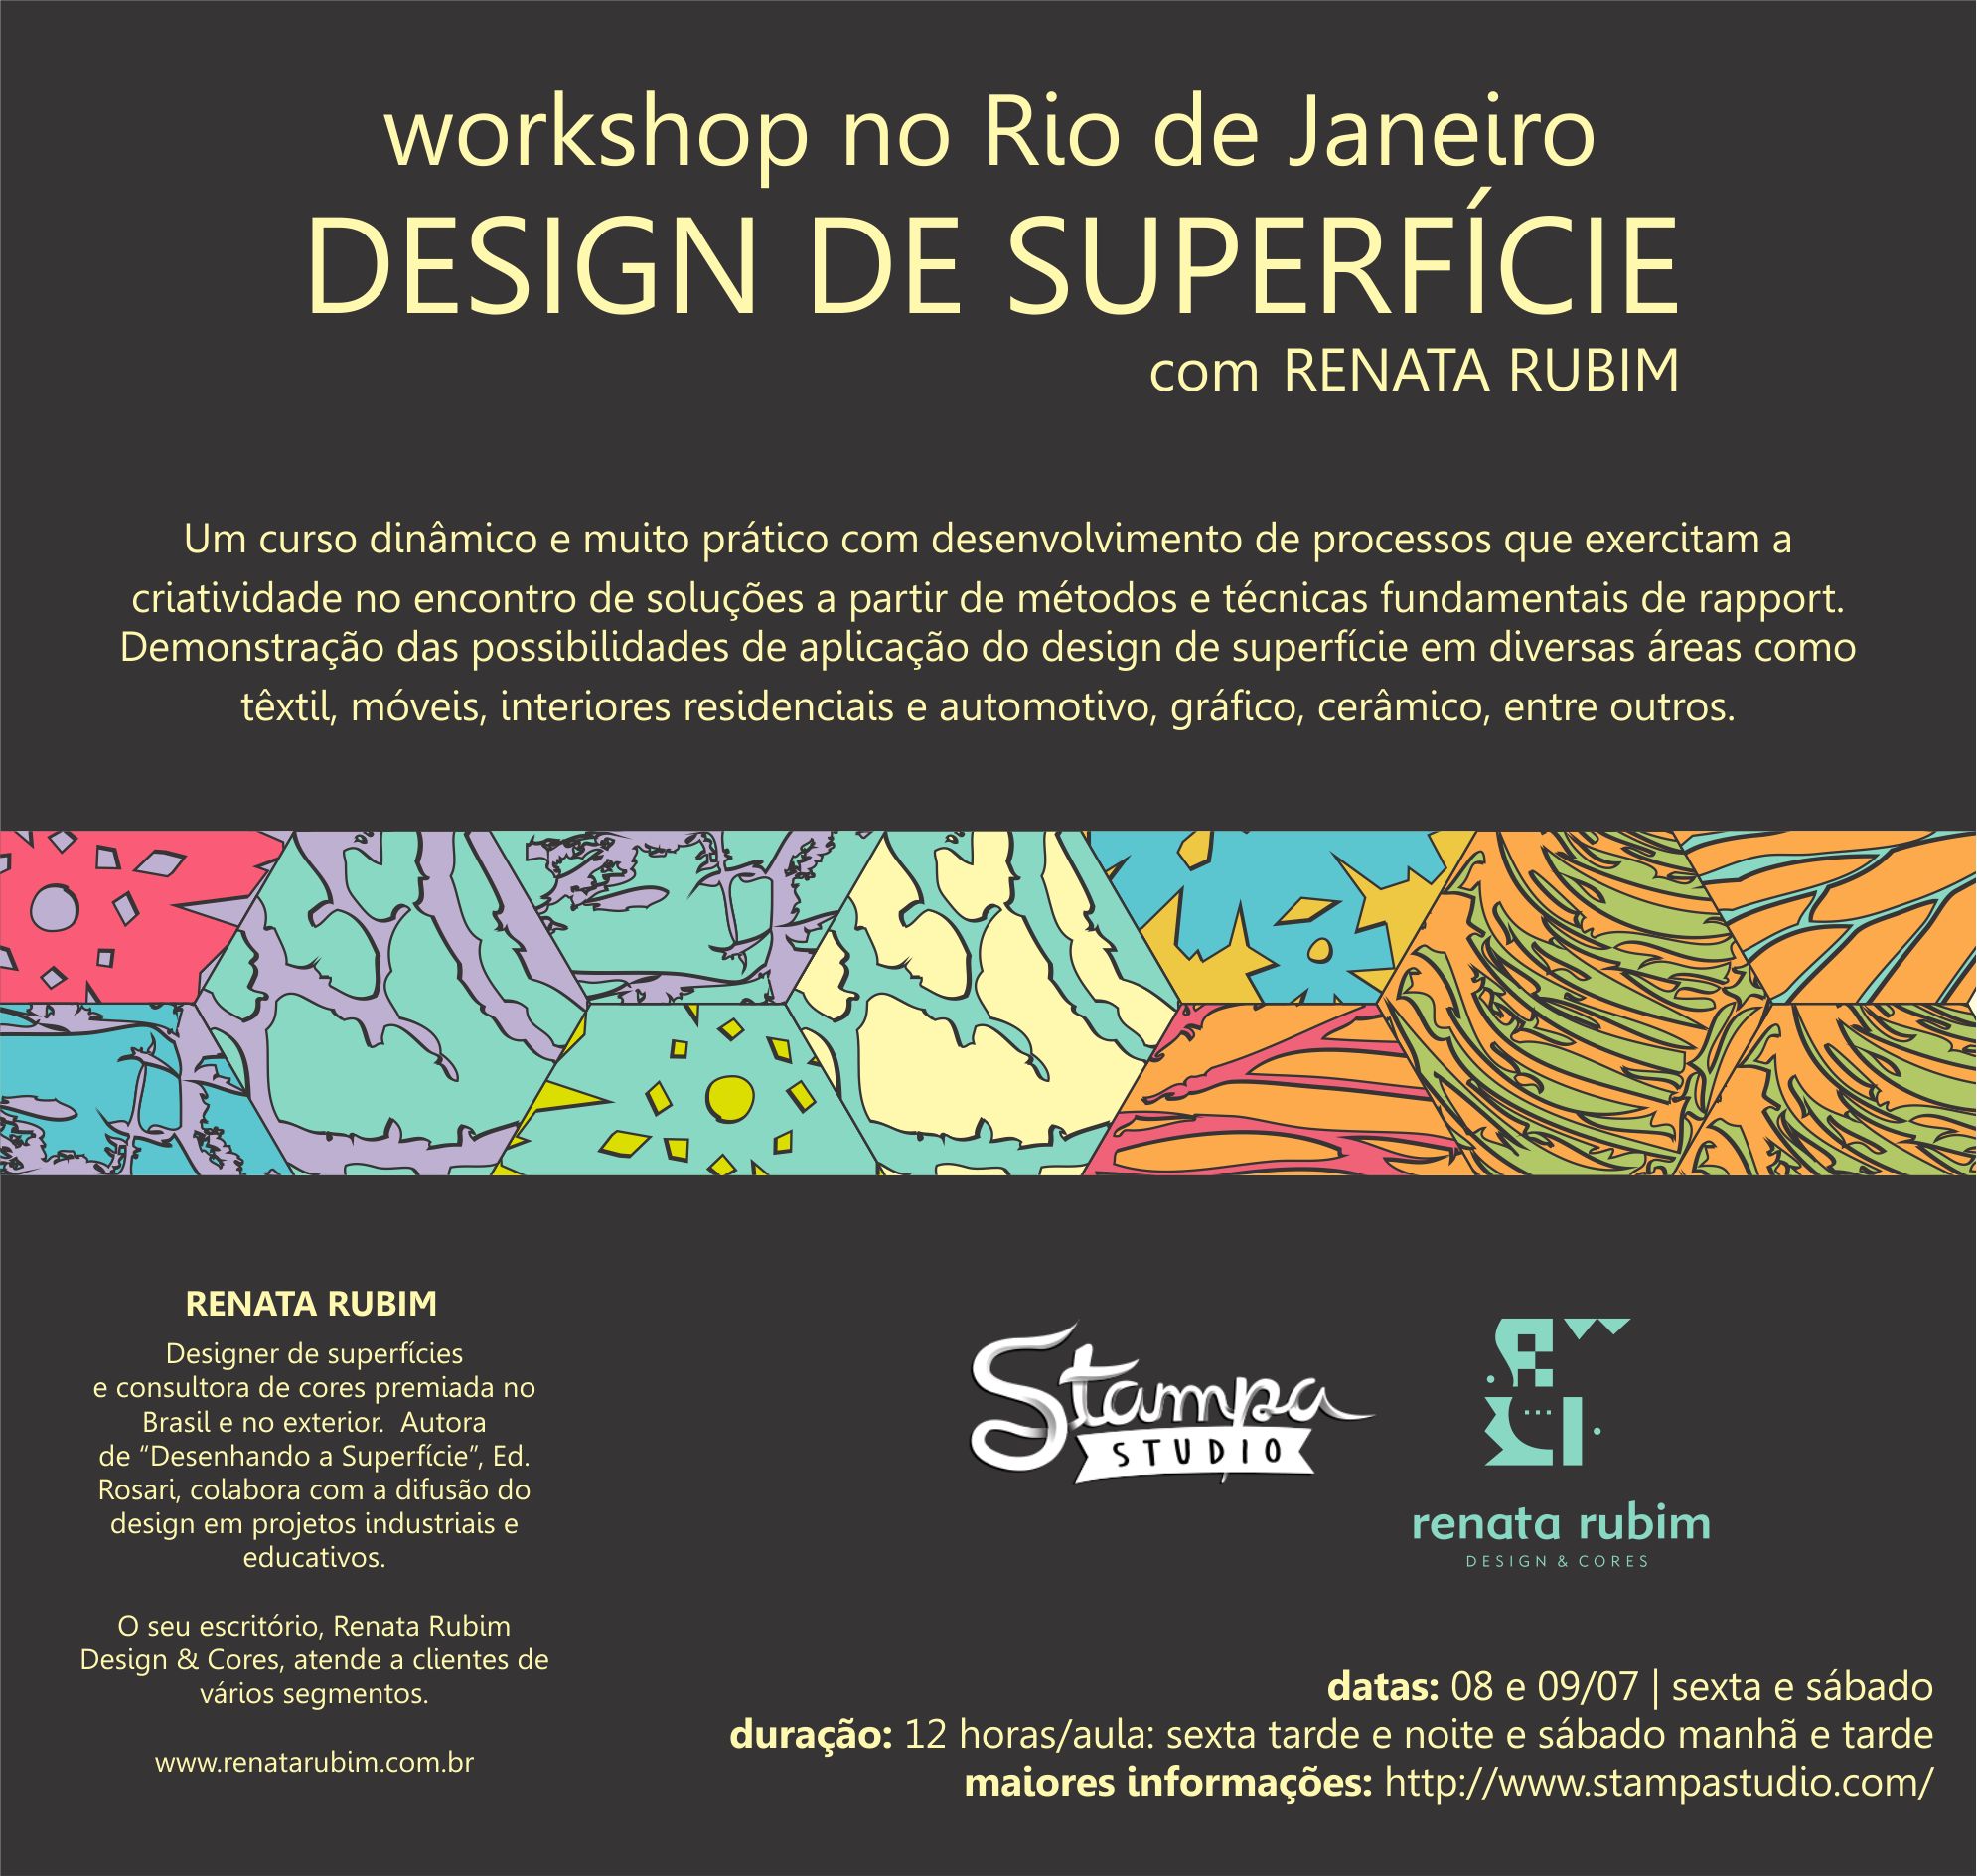 Workshop Design de Superfície | Stampa Studio Rio de Janeiro